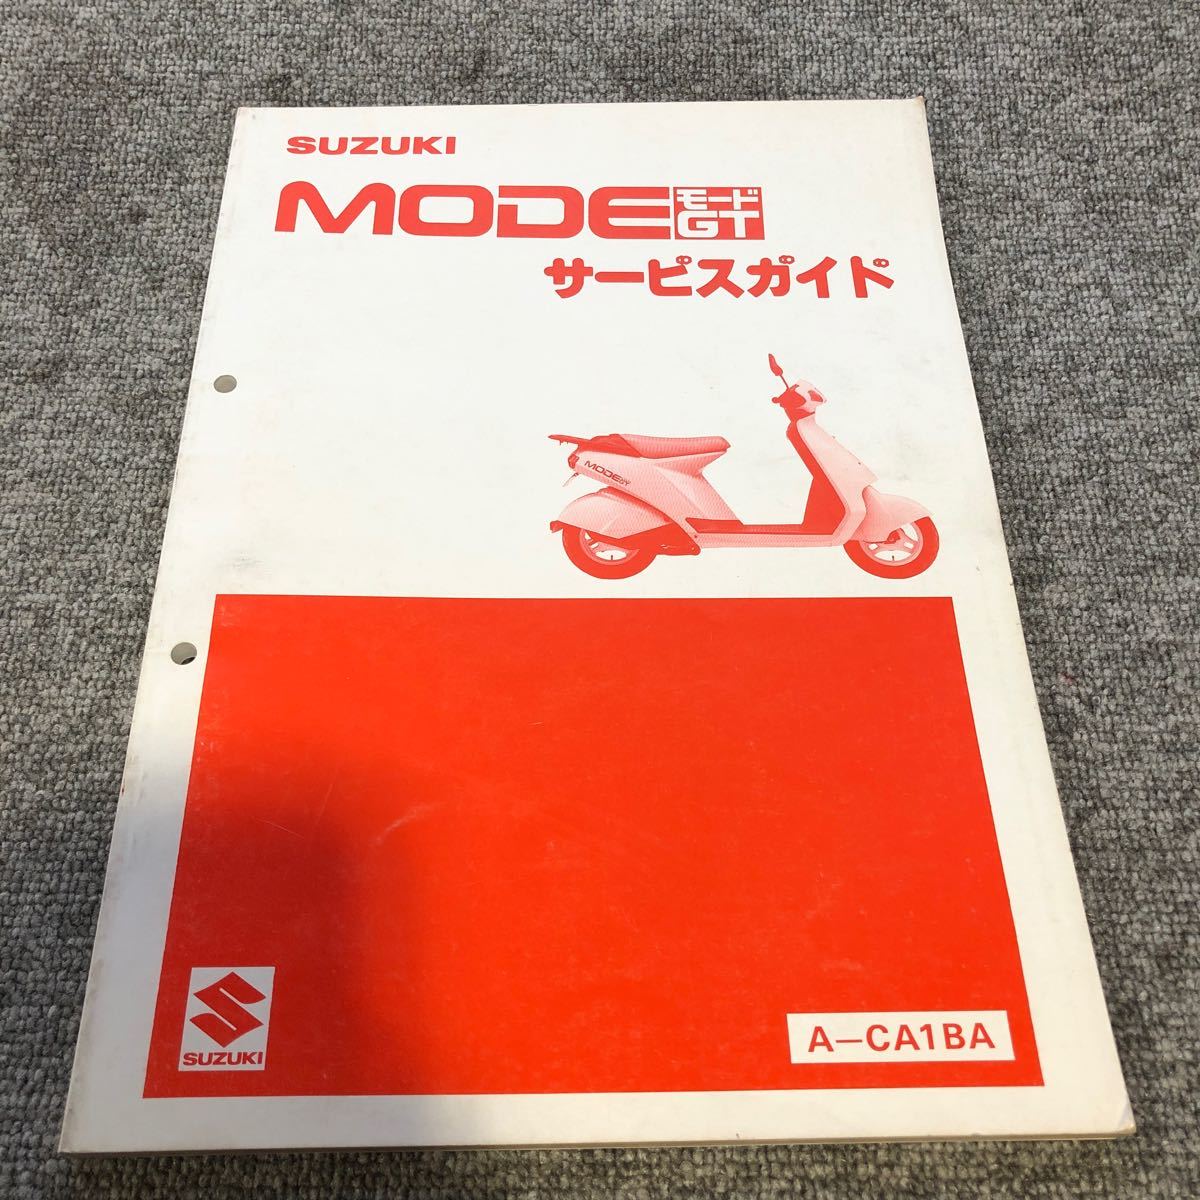 SUZUKI スズキ【MODE モードGT(A-CA1BA)】 サービスマニュアルの画像1